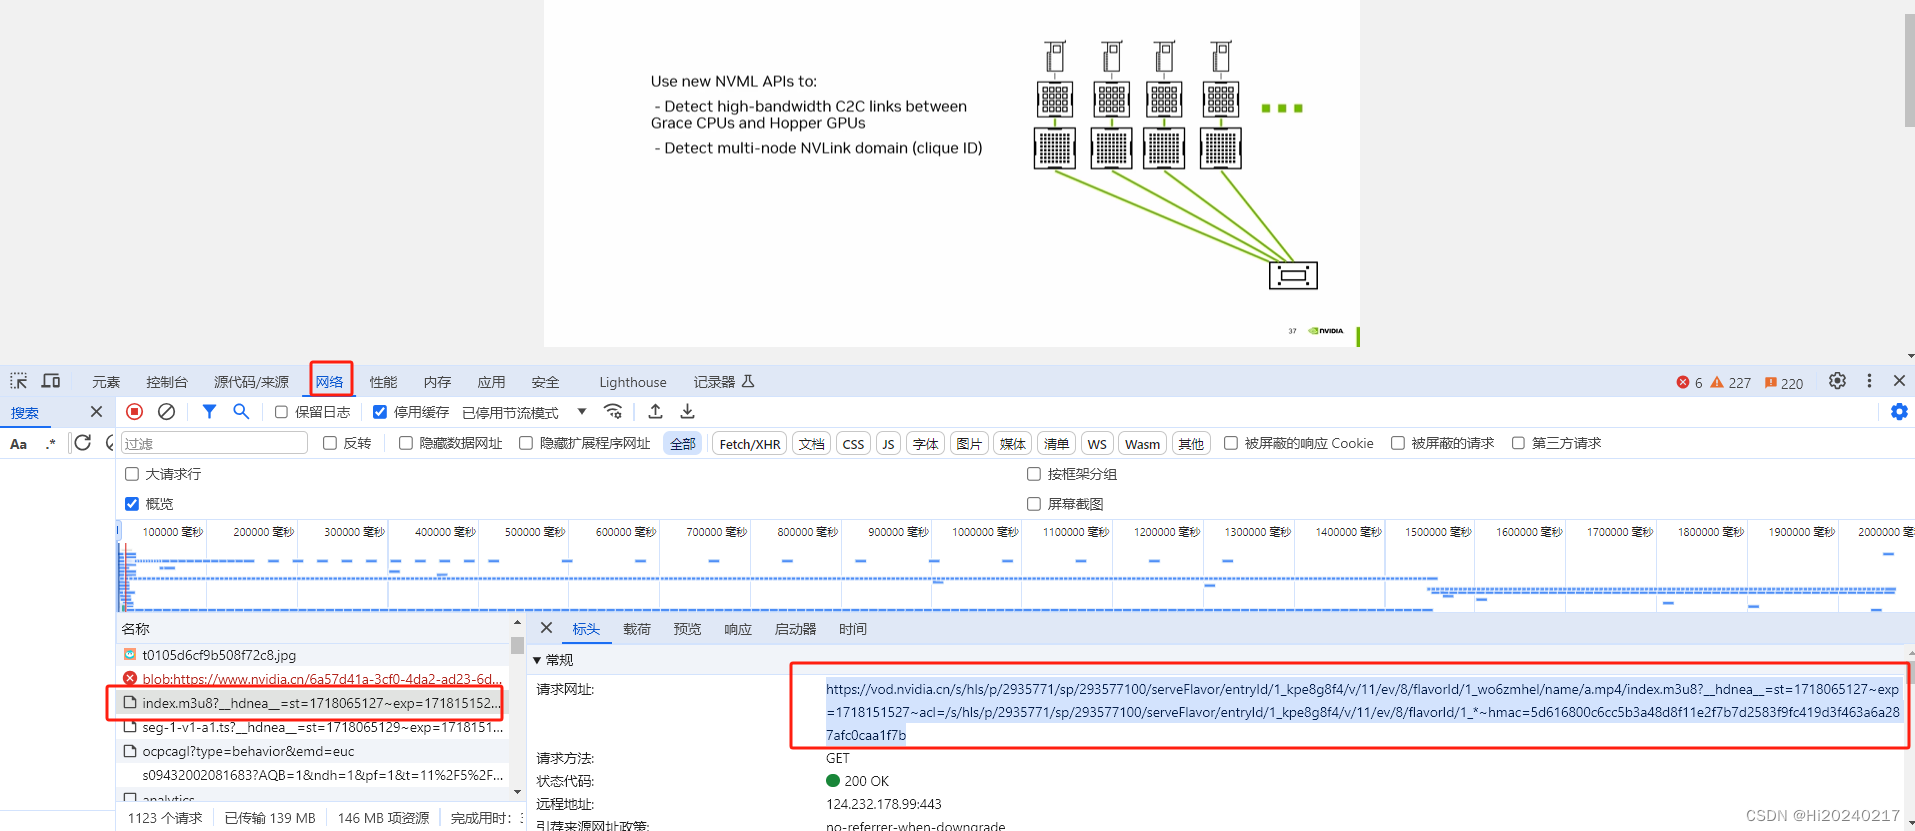 下载NVIDIA官网的培训视频,生成中文字幕和PPT